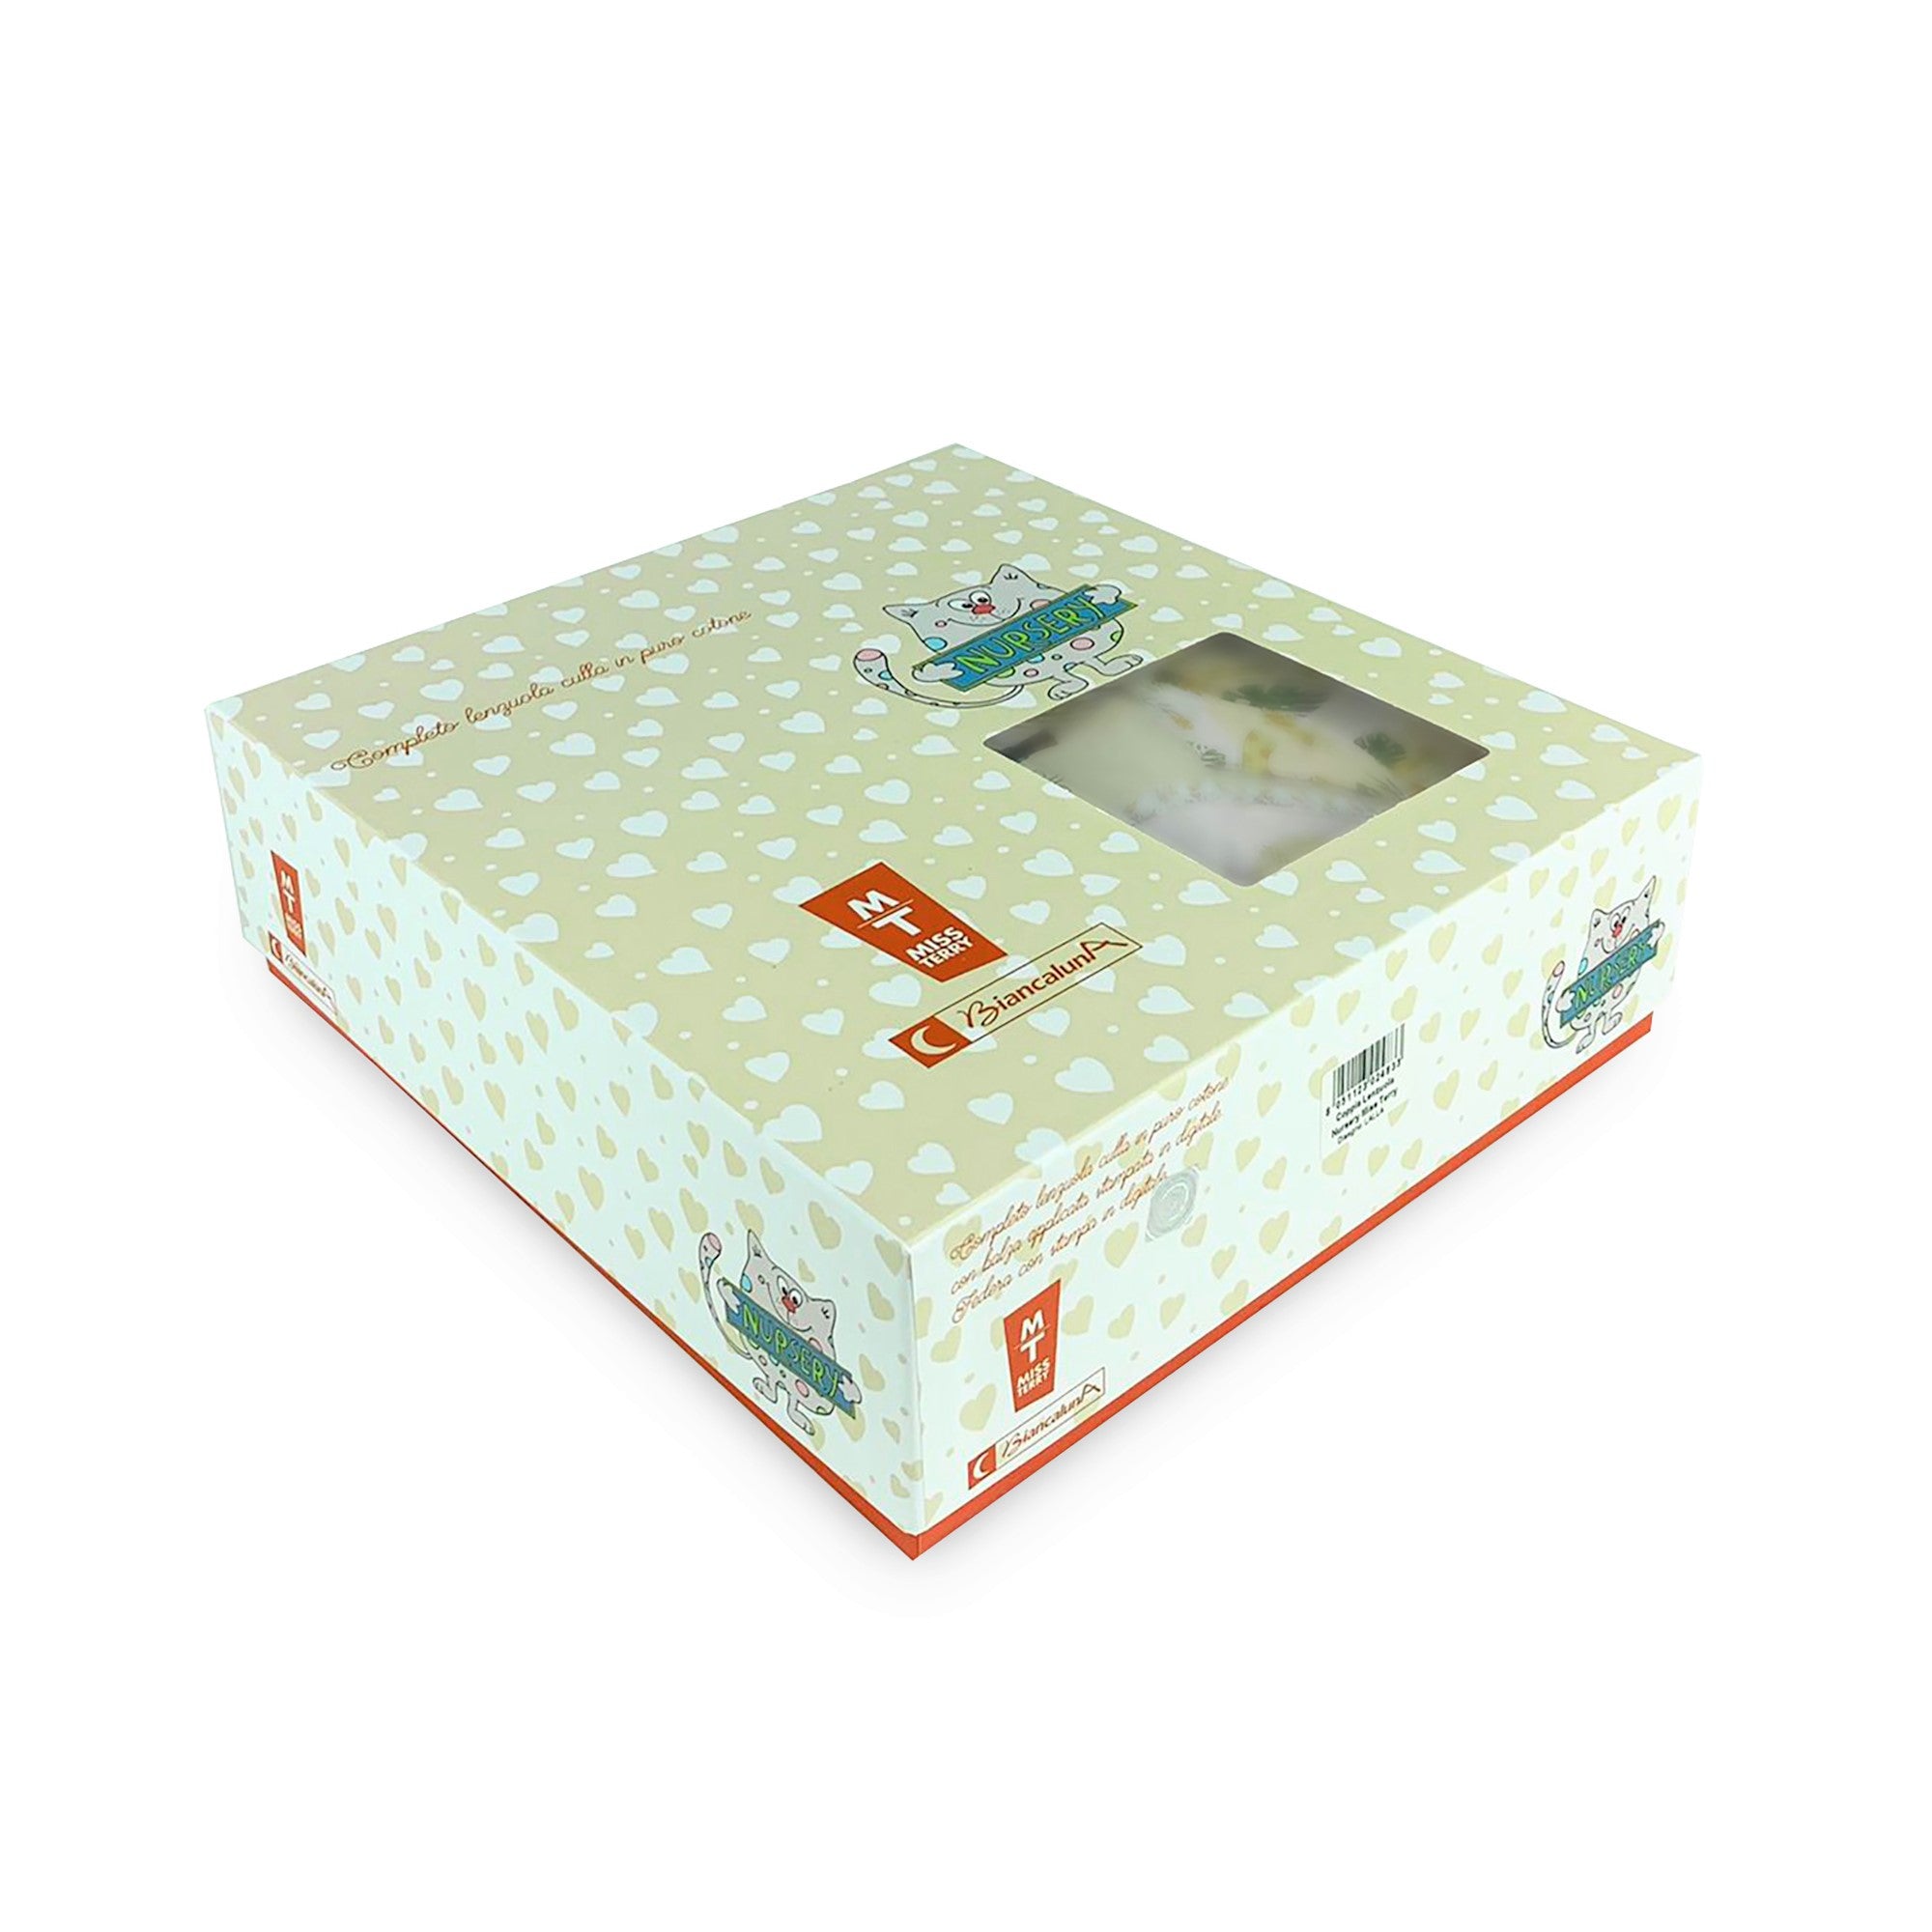 Completo lenzuola culla lettino in cotone Biancaluna stampa digital set 3pz 4153